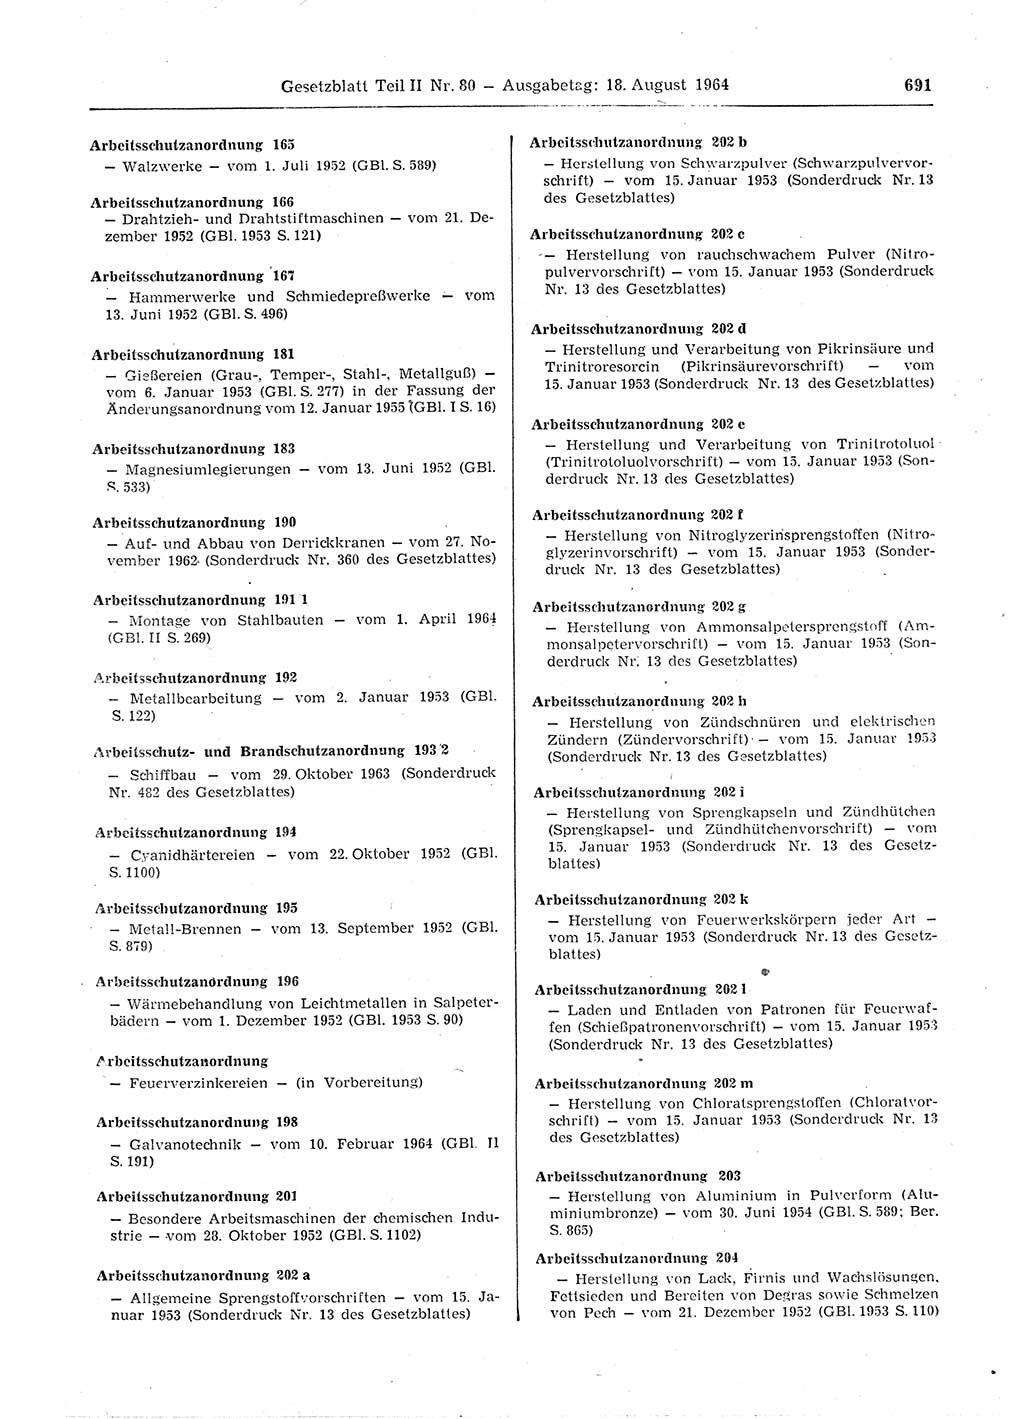 Gesetzblatt (GBl.) der Deutschen Demokratischen Republik (DDR) Teil ⅠⅠ 1964, Seite 691 (GBl. DDR ⅠⅠ 1964, S. 691)